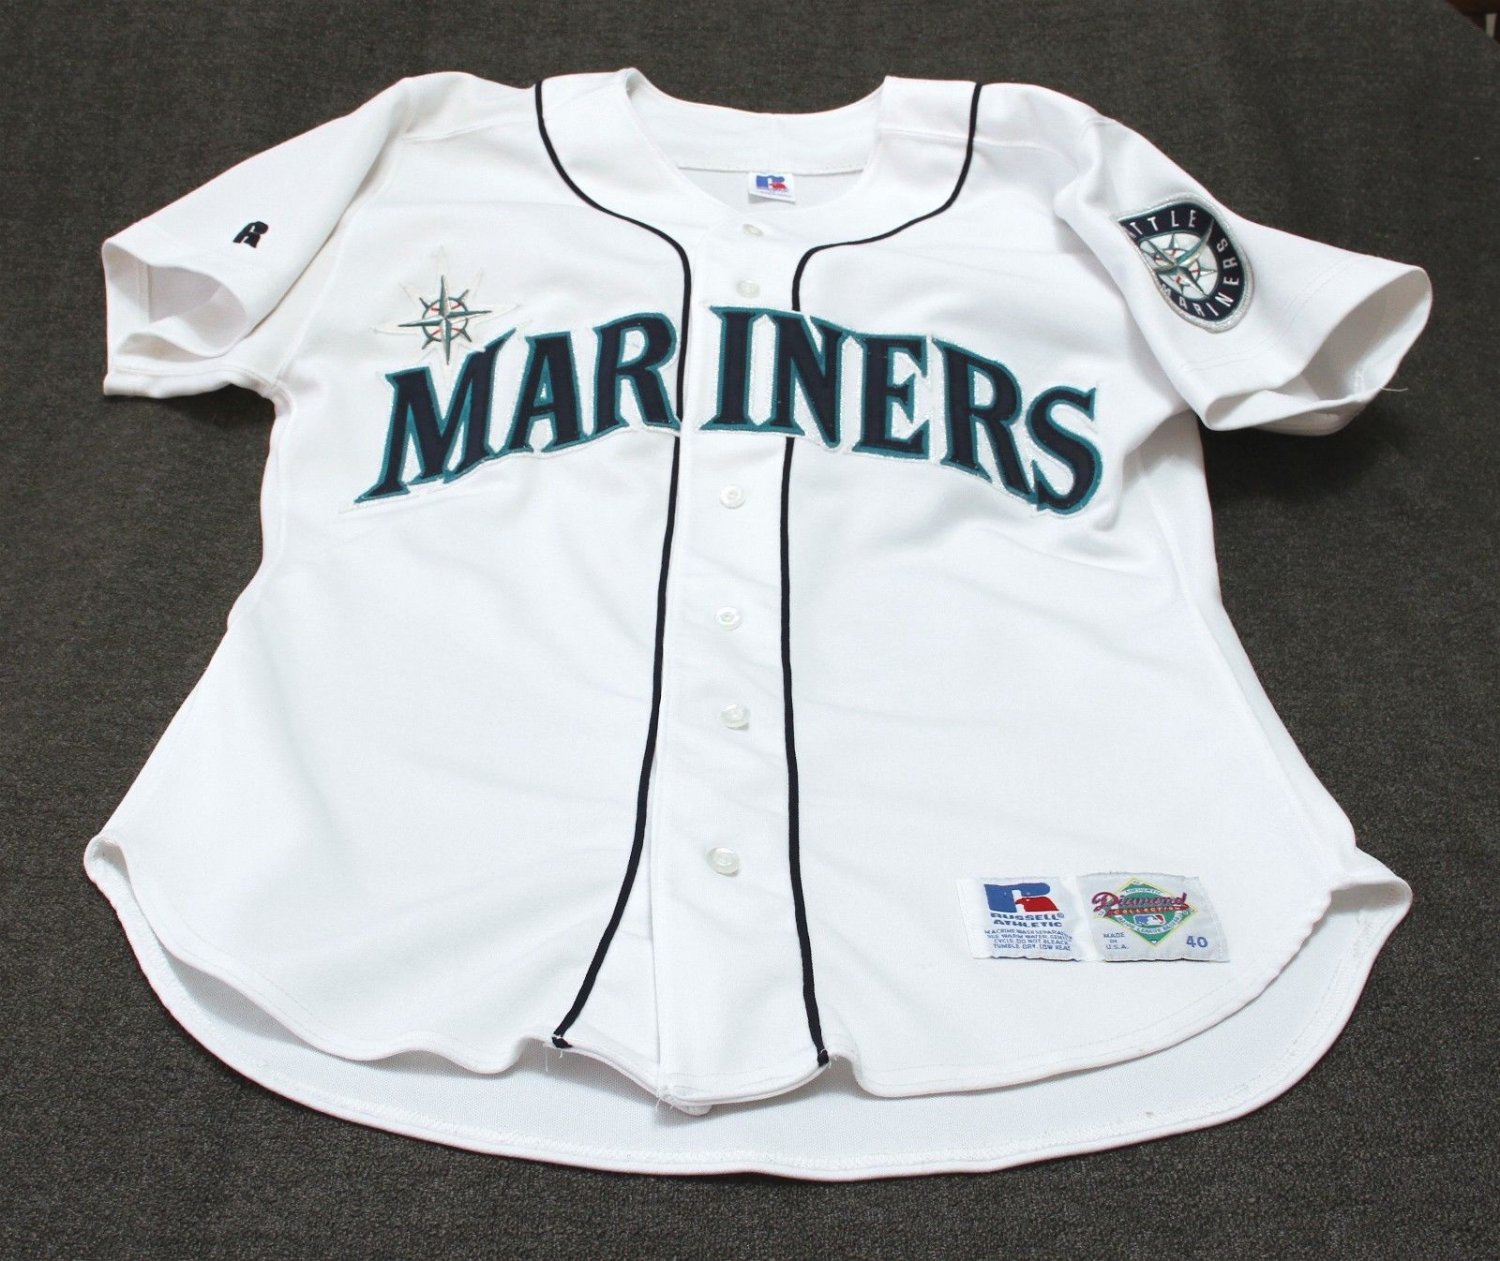 MLB Seattle Mariners 90s 大きめサイズ ゲームシャツ年代ものの古着